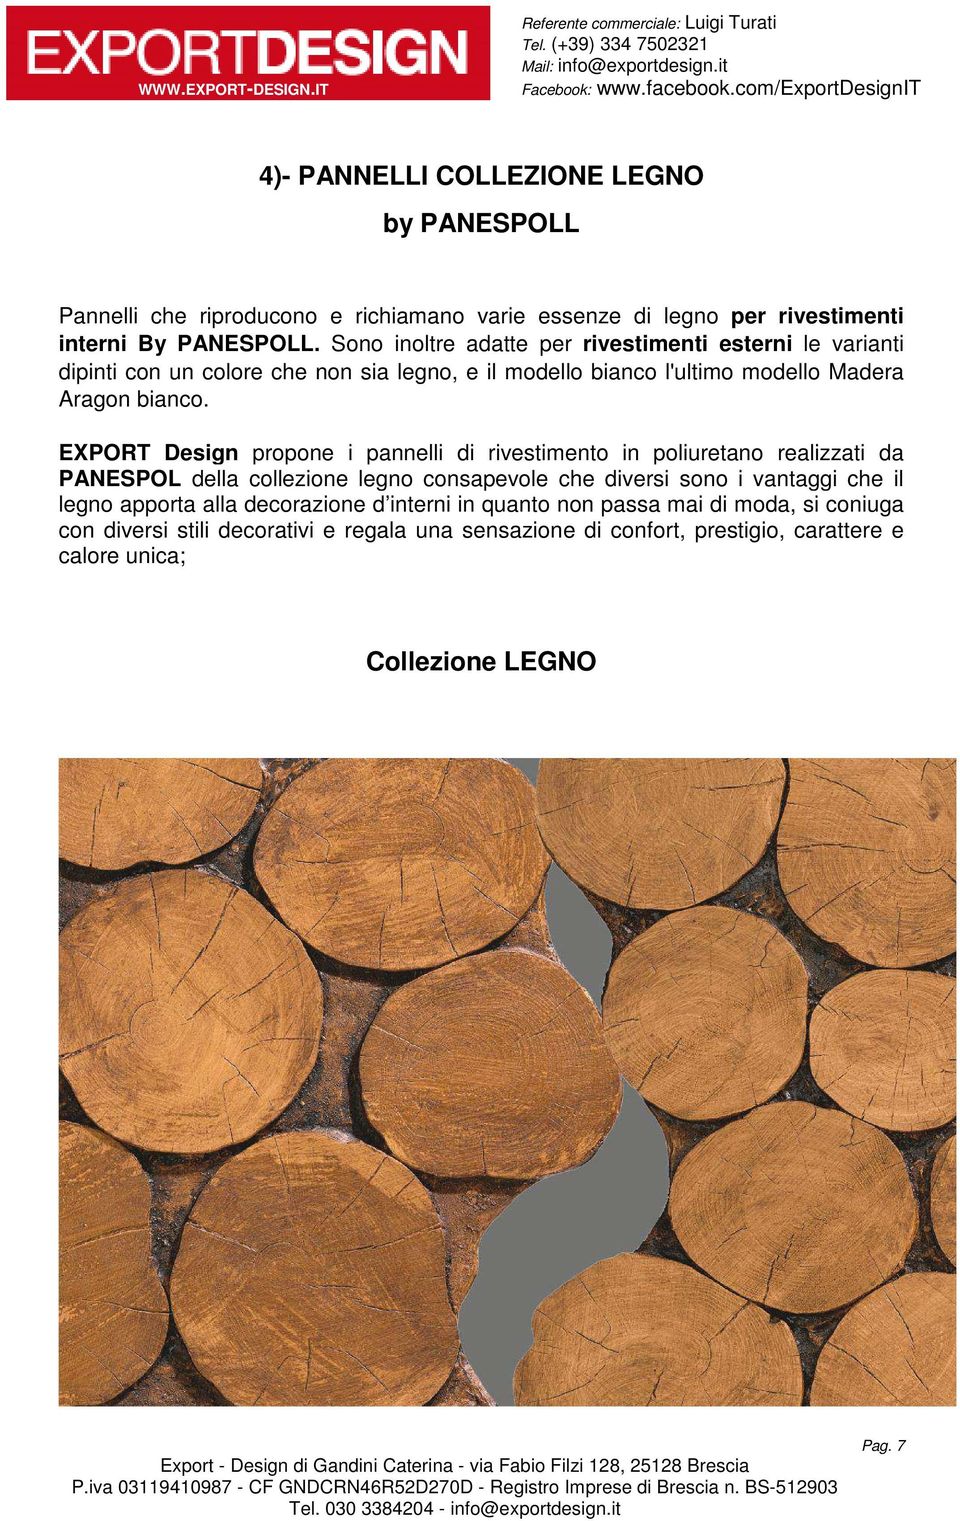 EXPORT Design propone i pannelli di rivestimento in poliuretano realizzati da PANESPOL della collezione legno consapevole che diversi sono i vantaggi che il legno